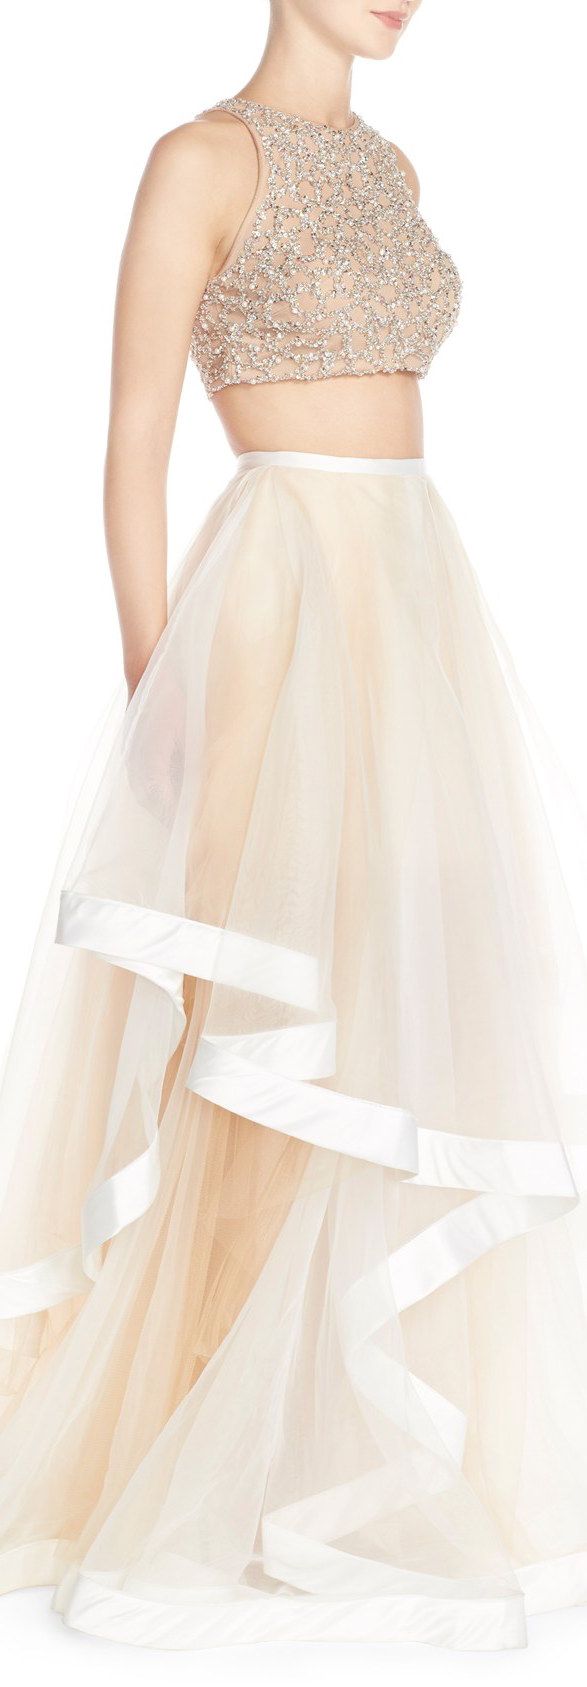 زفاف - Glamour By Terani Couture Beaded Top & Organza Two-Piece Ballgown 